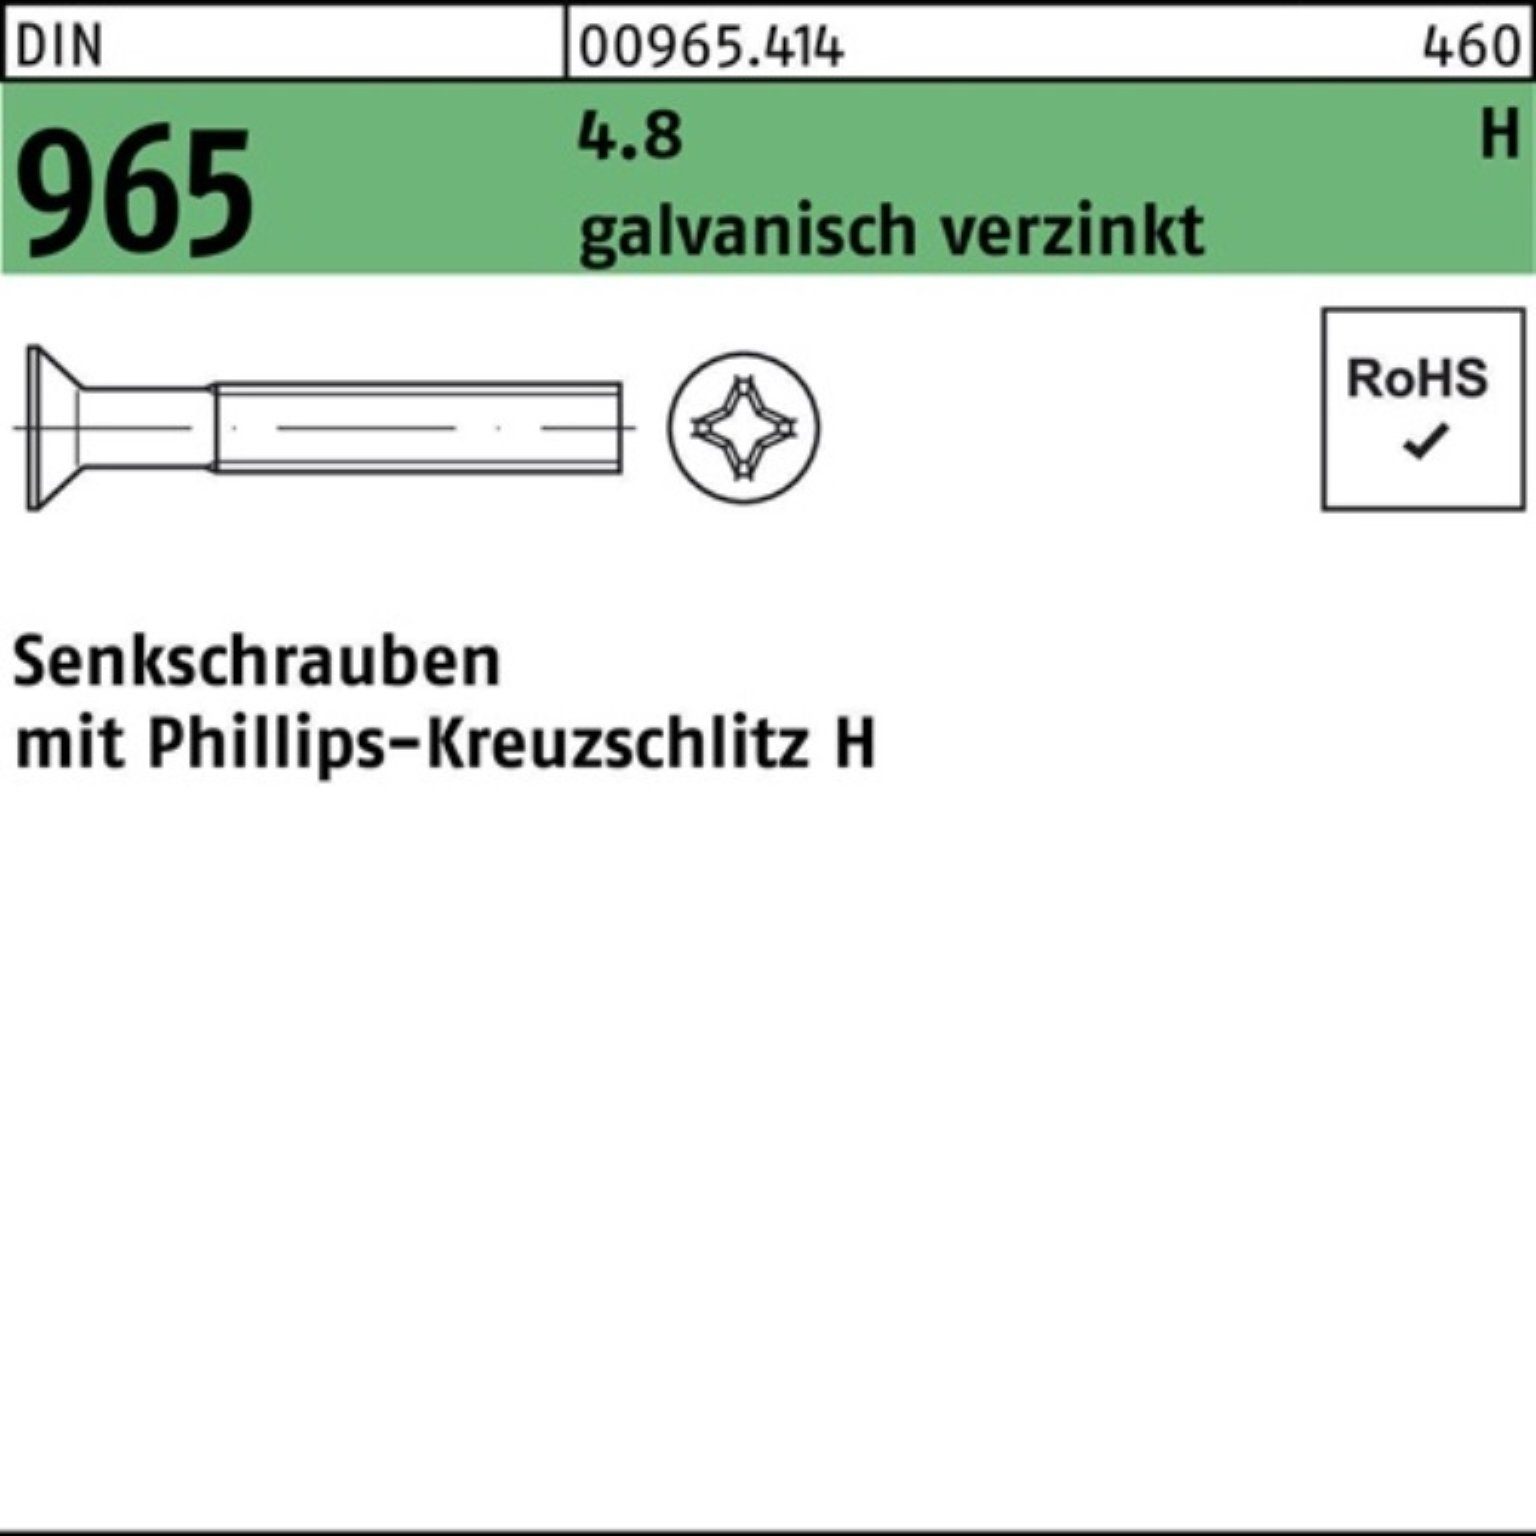 Pack PH M2x Senkschraube 10-H DIN galv.verz. 4.8 2000er Senkschraube 965 DI 2000St. Reyher